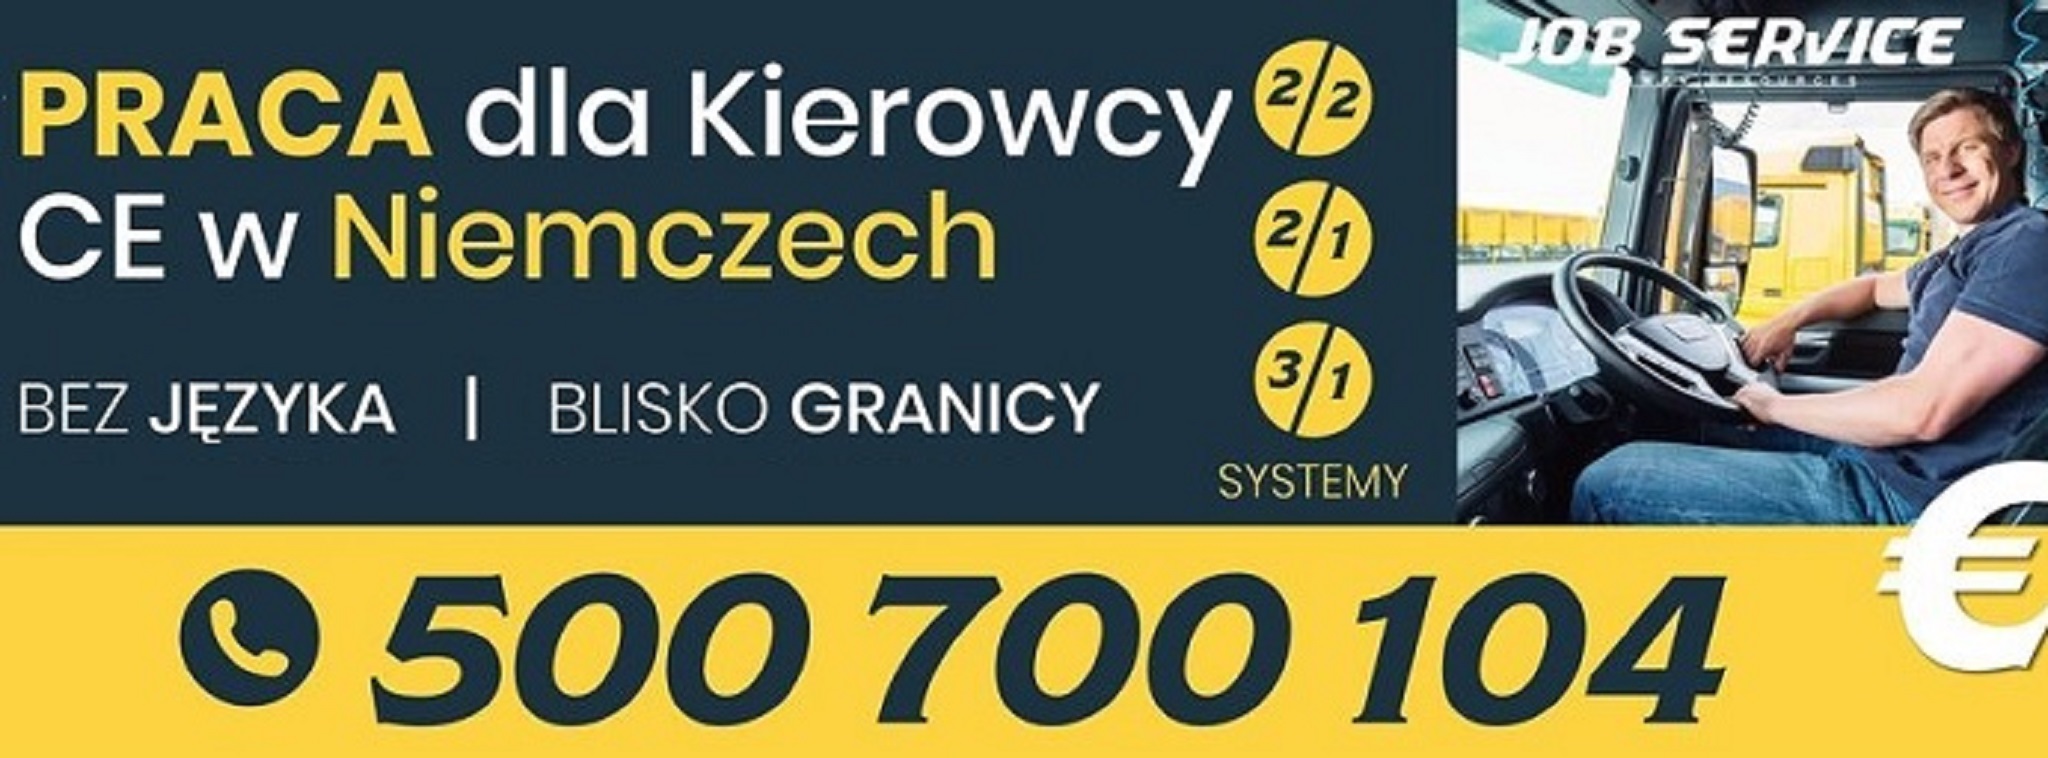 Praca Kierowca C+E, system 2/2, tandem/bdf, 1750€ Netto Kraków - GoWork.pl